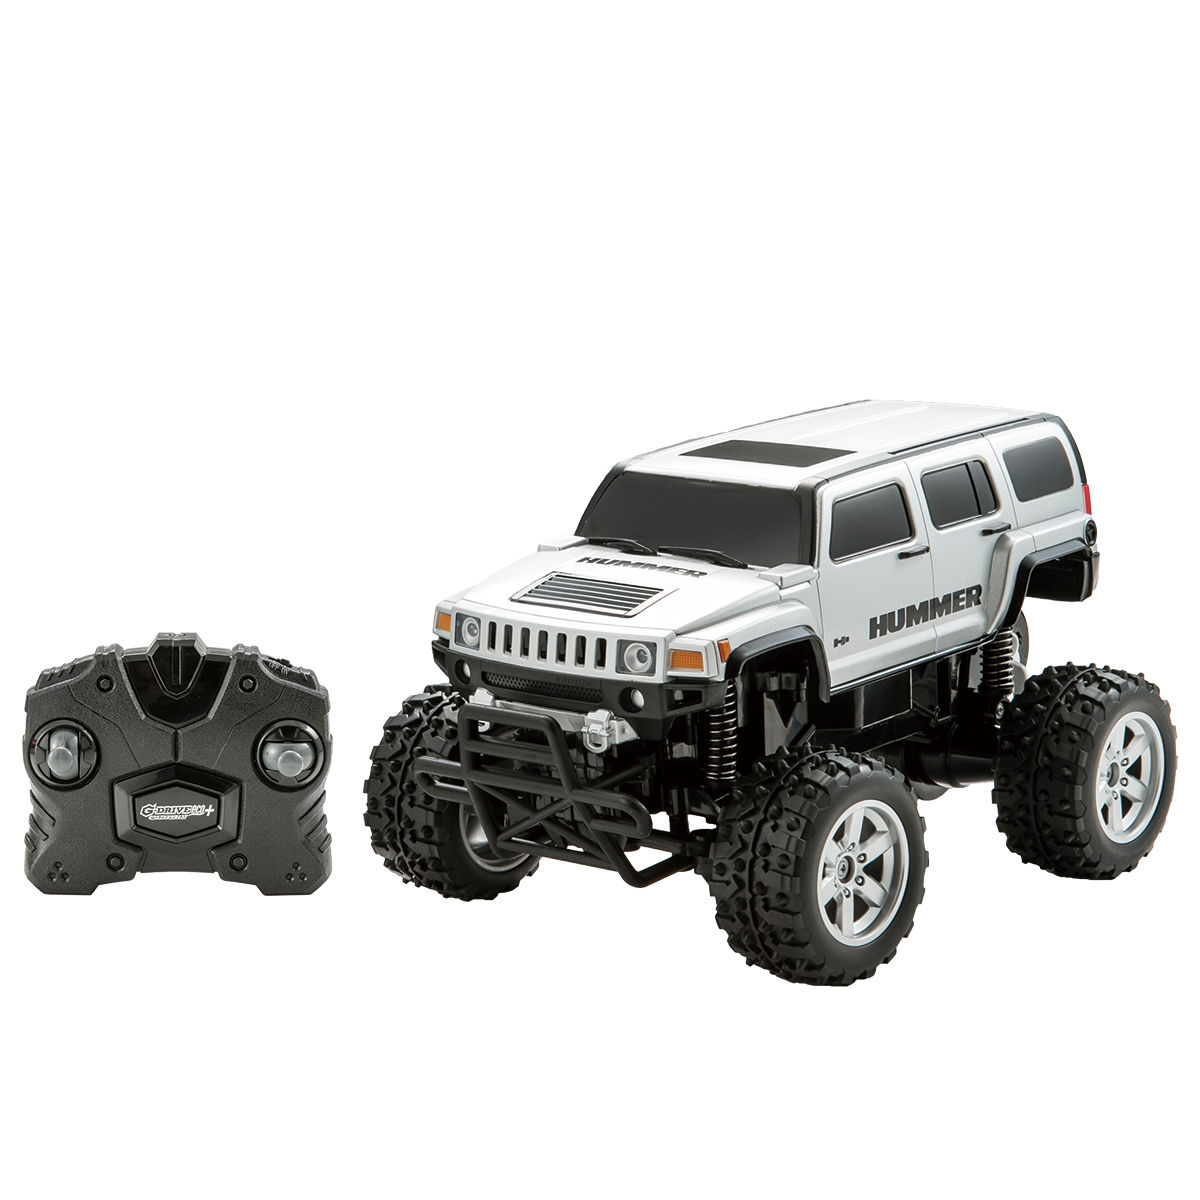 ラジコン ハマー 大型 HUMMER SUV H2 特大 全長約31cm RC 16 スケール ディスプレイ ラジコンカー 電池 車 こども 子供 おもちゃ 玩具 プレゼント かっこいい